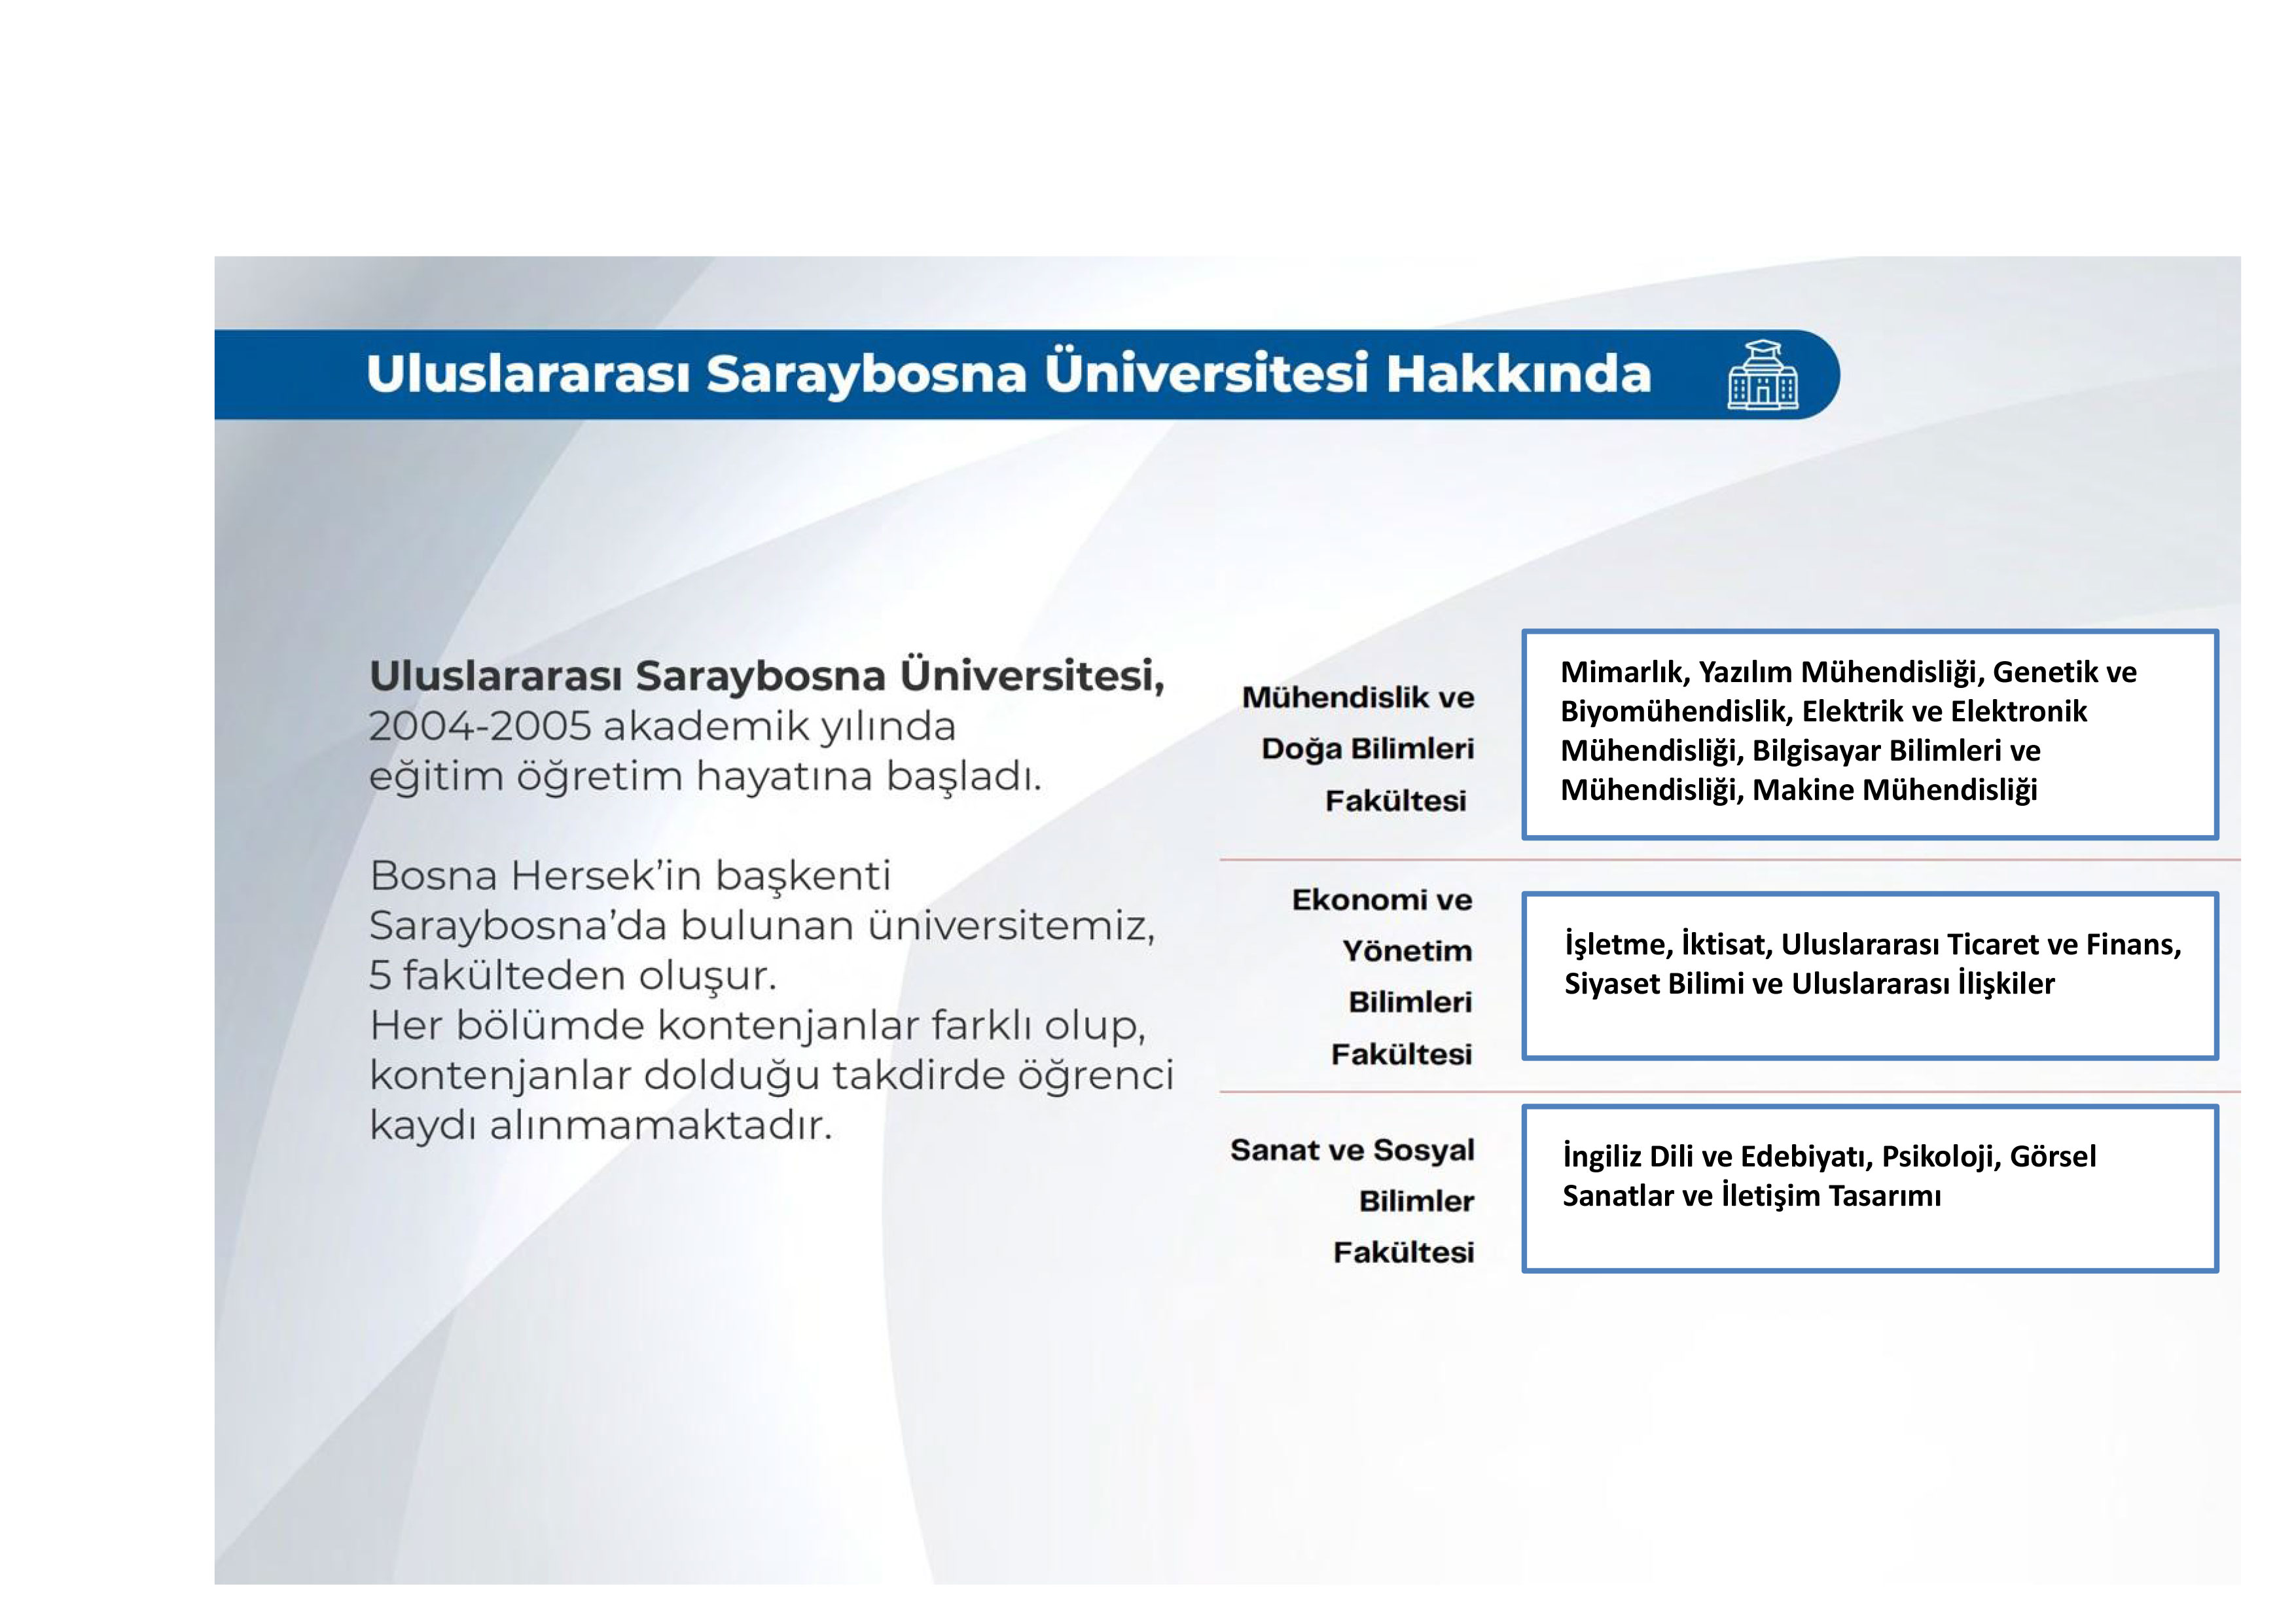 Uluslararası Saraybosna Üniversitesi hakkında